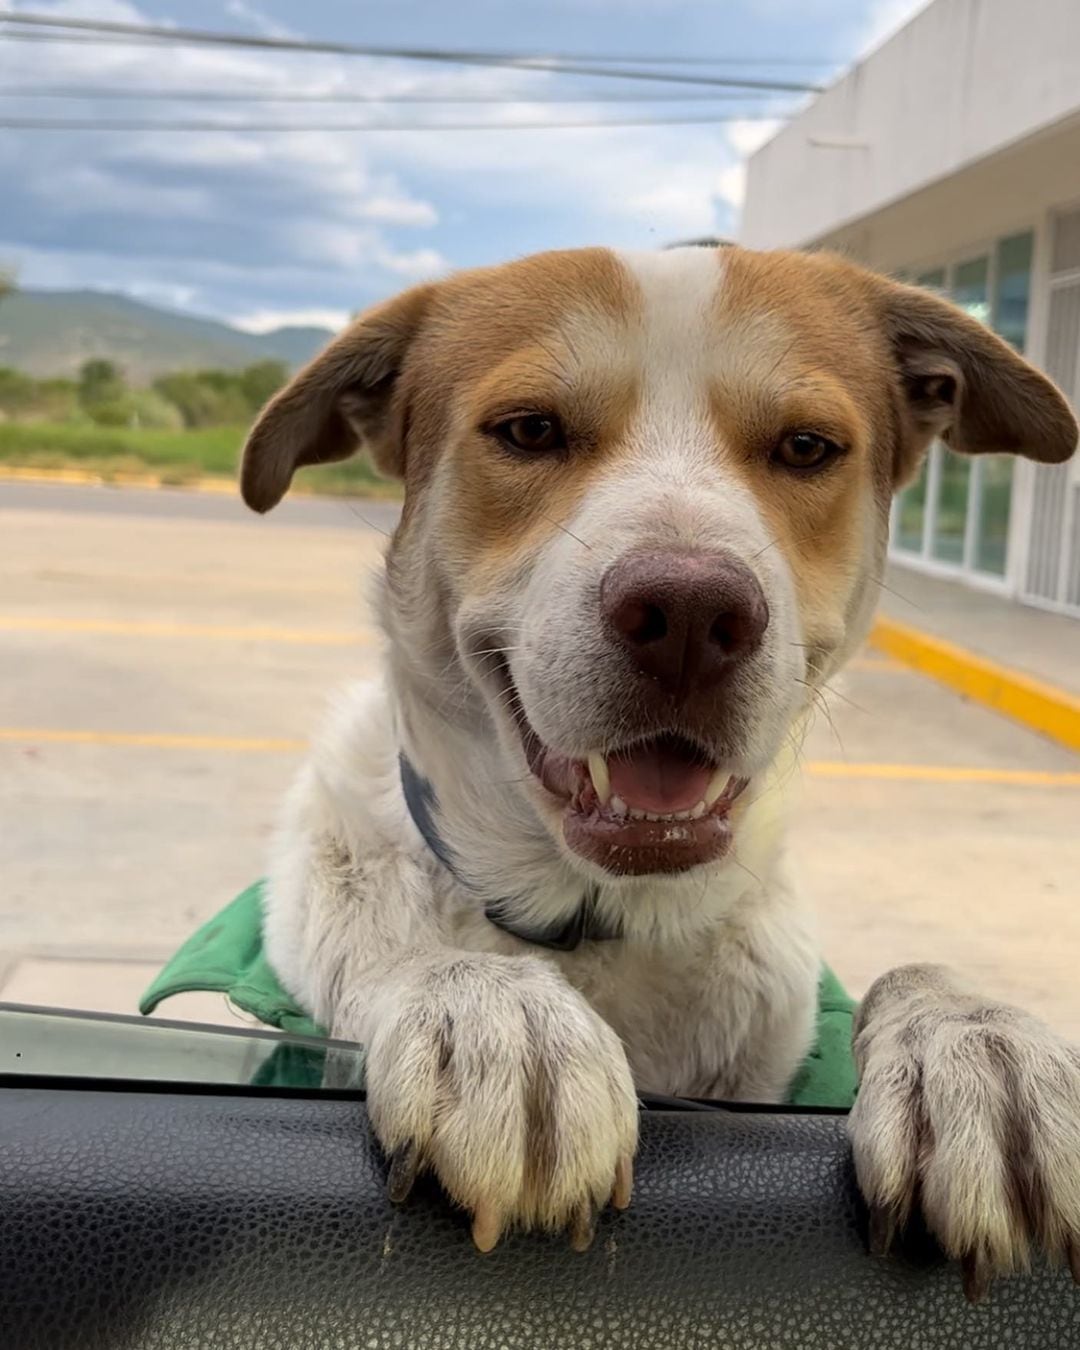 El canino le gusta darle la bienvenida a los clientes y a sus compañeros de trabajo (Instagram mailoelperrogasolinero)